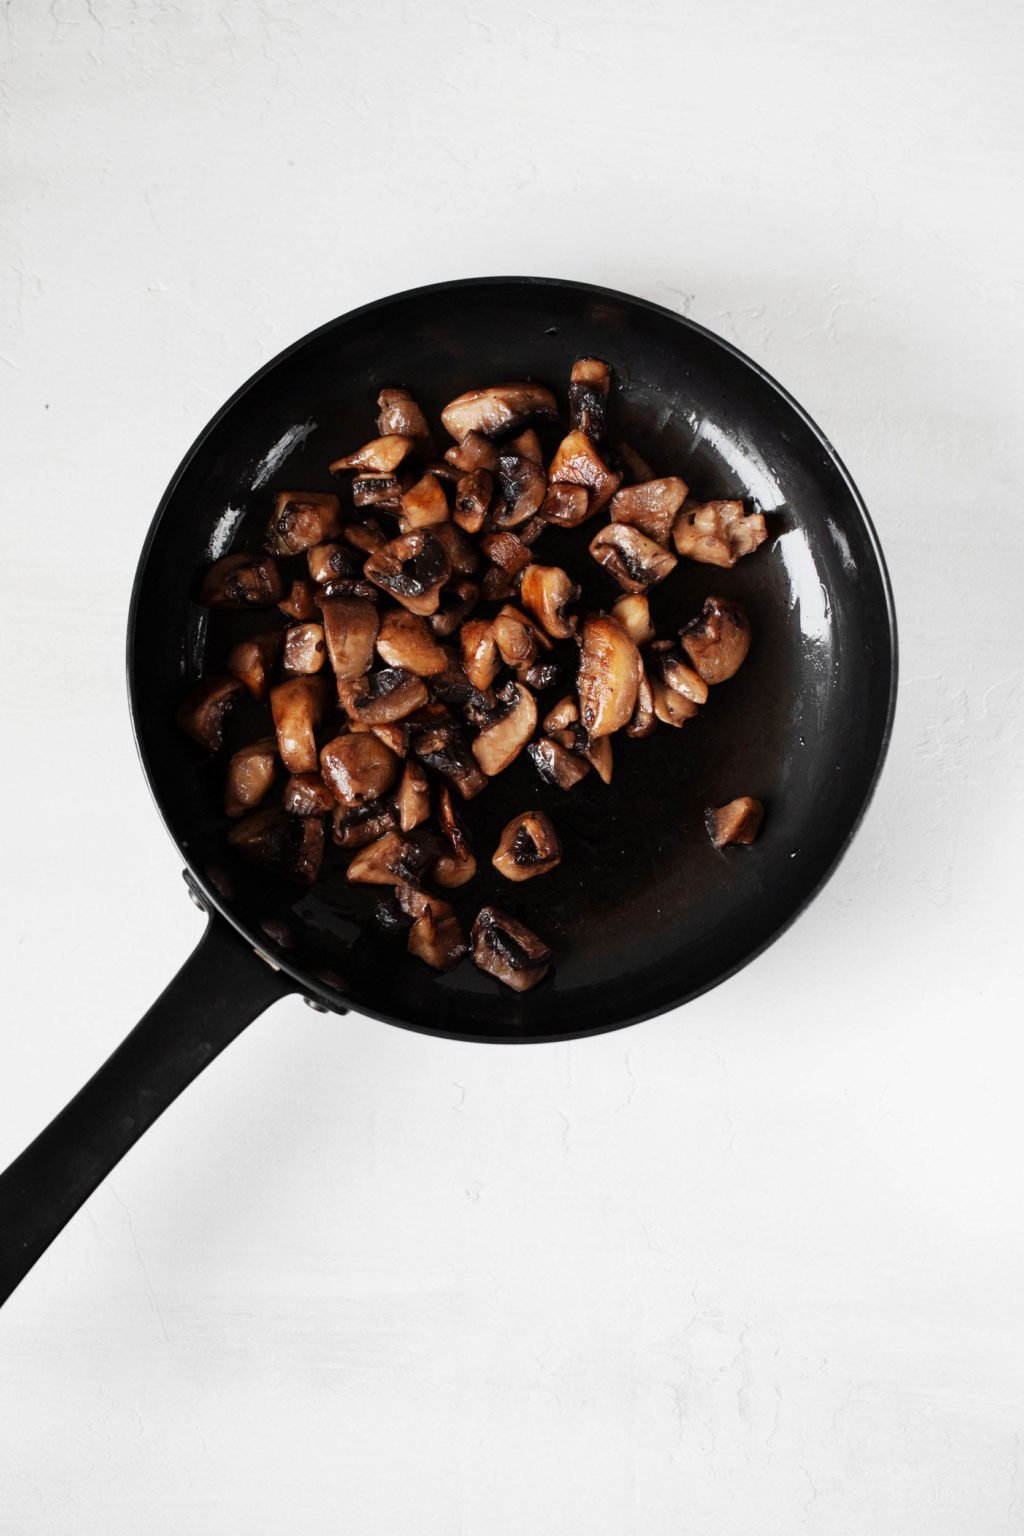 Gebakken champignons worden afgebeeld in een kleine zwarte koekenpan.  De pan ligt op een witte ondergrond.